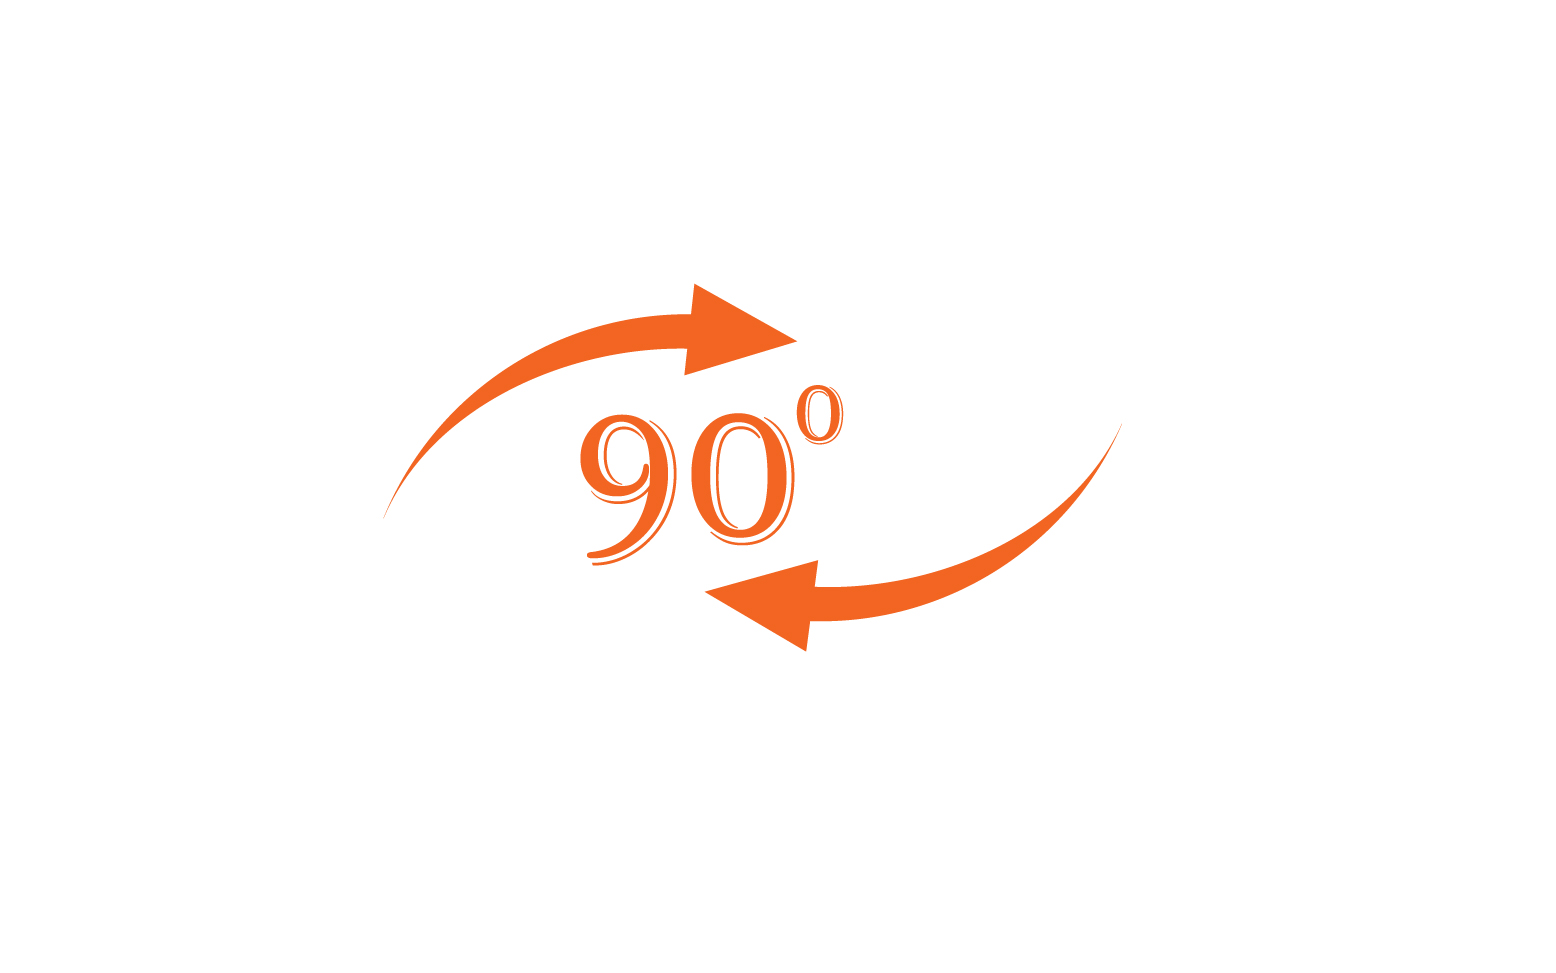 90 degree angle rotation icon symbol logo v39